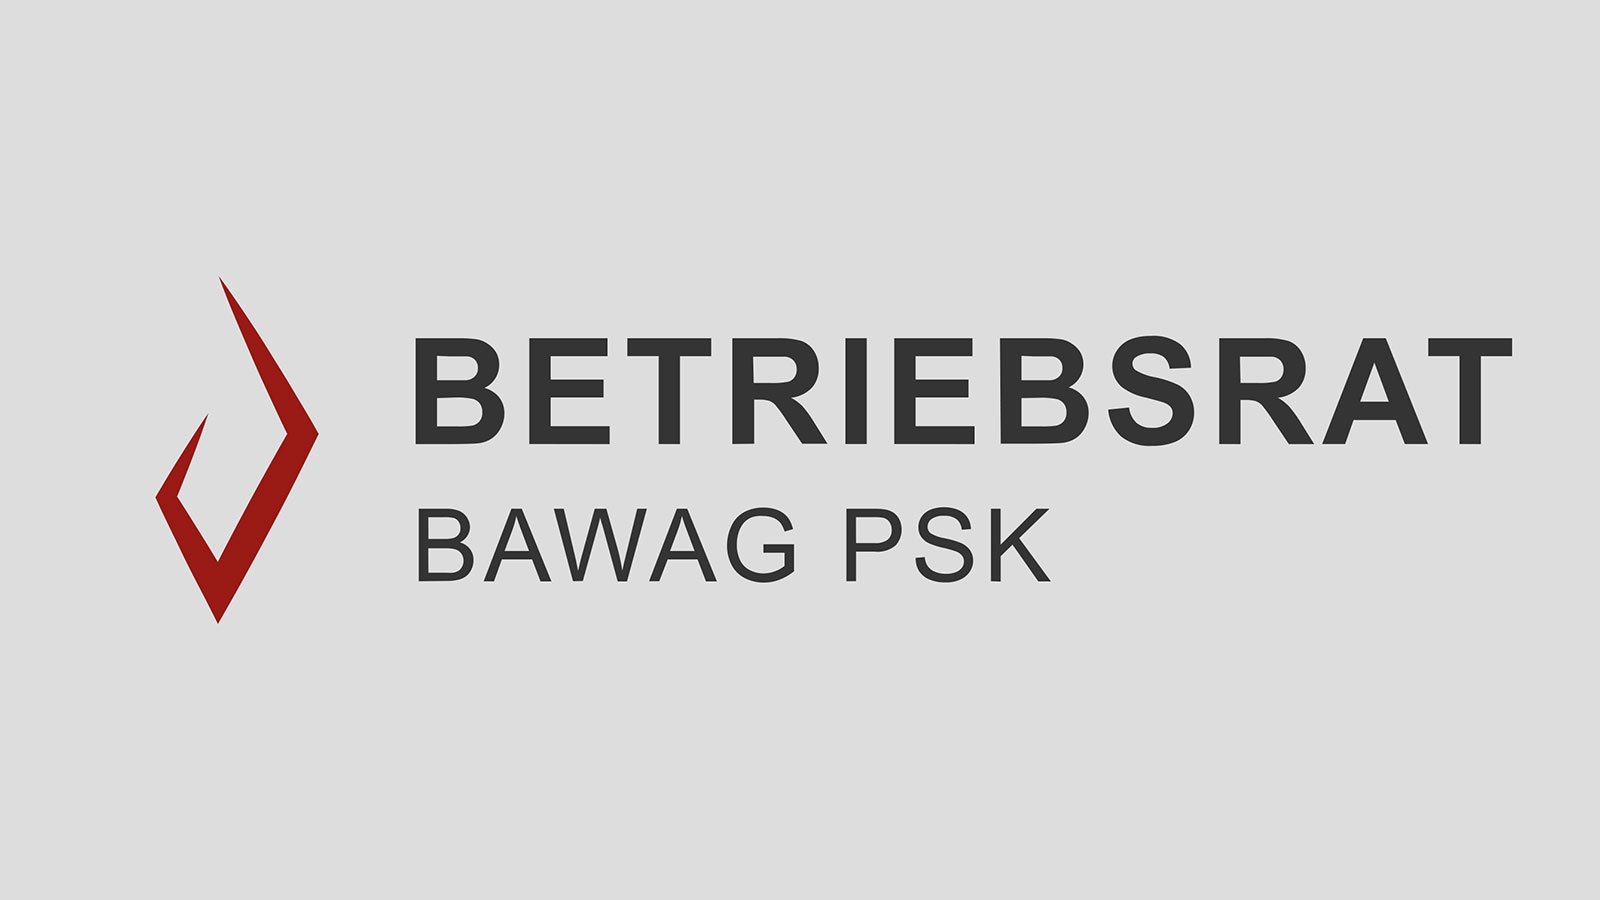 BAWAG PSK Betriebsrat | bawagpsk-betriebsrat.at | 2017 (Logo) © echonet communication